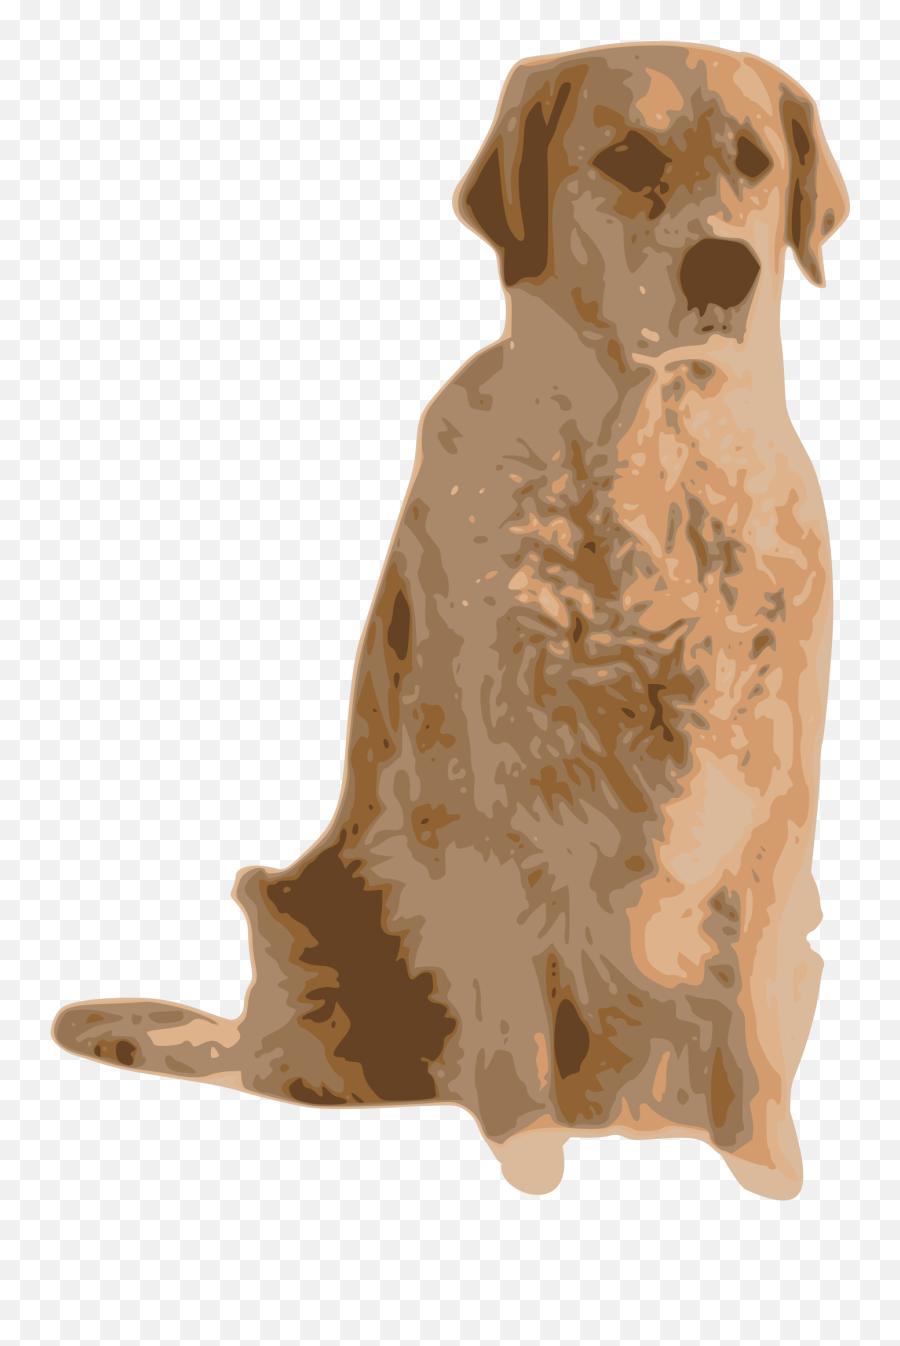 Companion Dog Carnivoran Nova Scotia Emoji,Golden Retriever Clipart